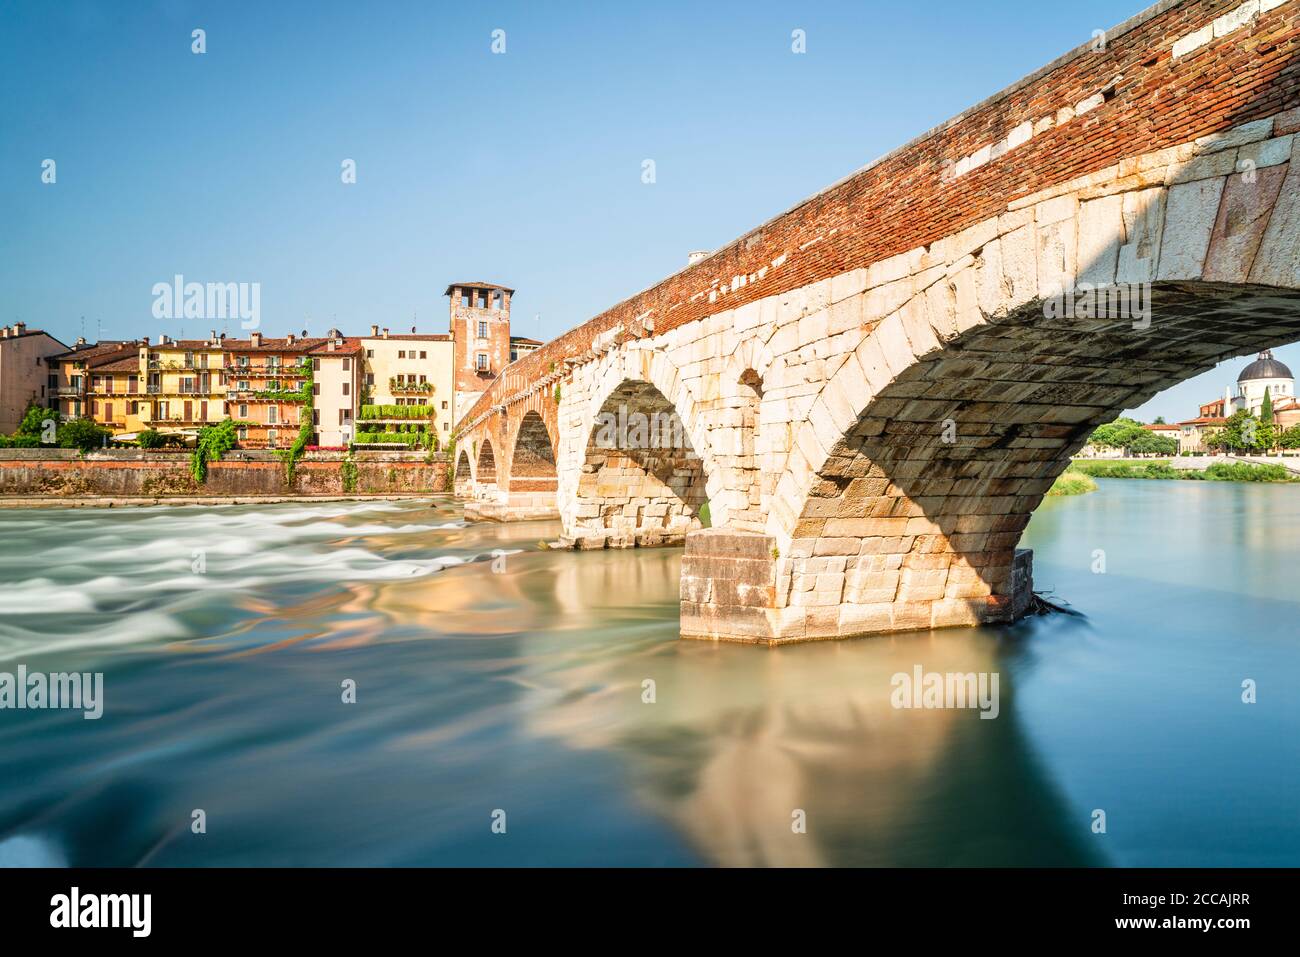 Il ponte romano ad arco di pietra sul fiume Adige con il panorama del centro storico di Verona al sole del mattino, Veneto, Italia Foto Stock